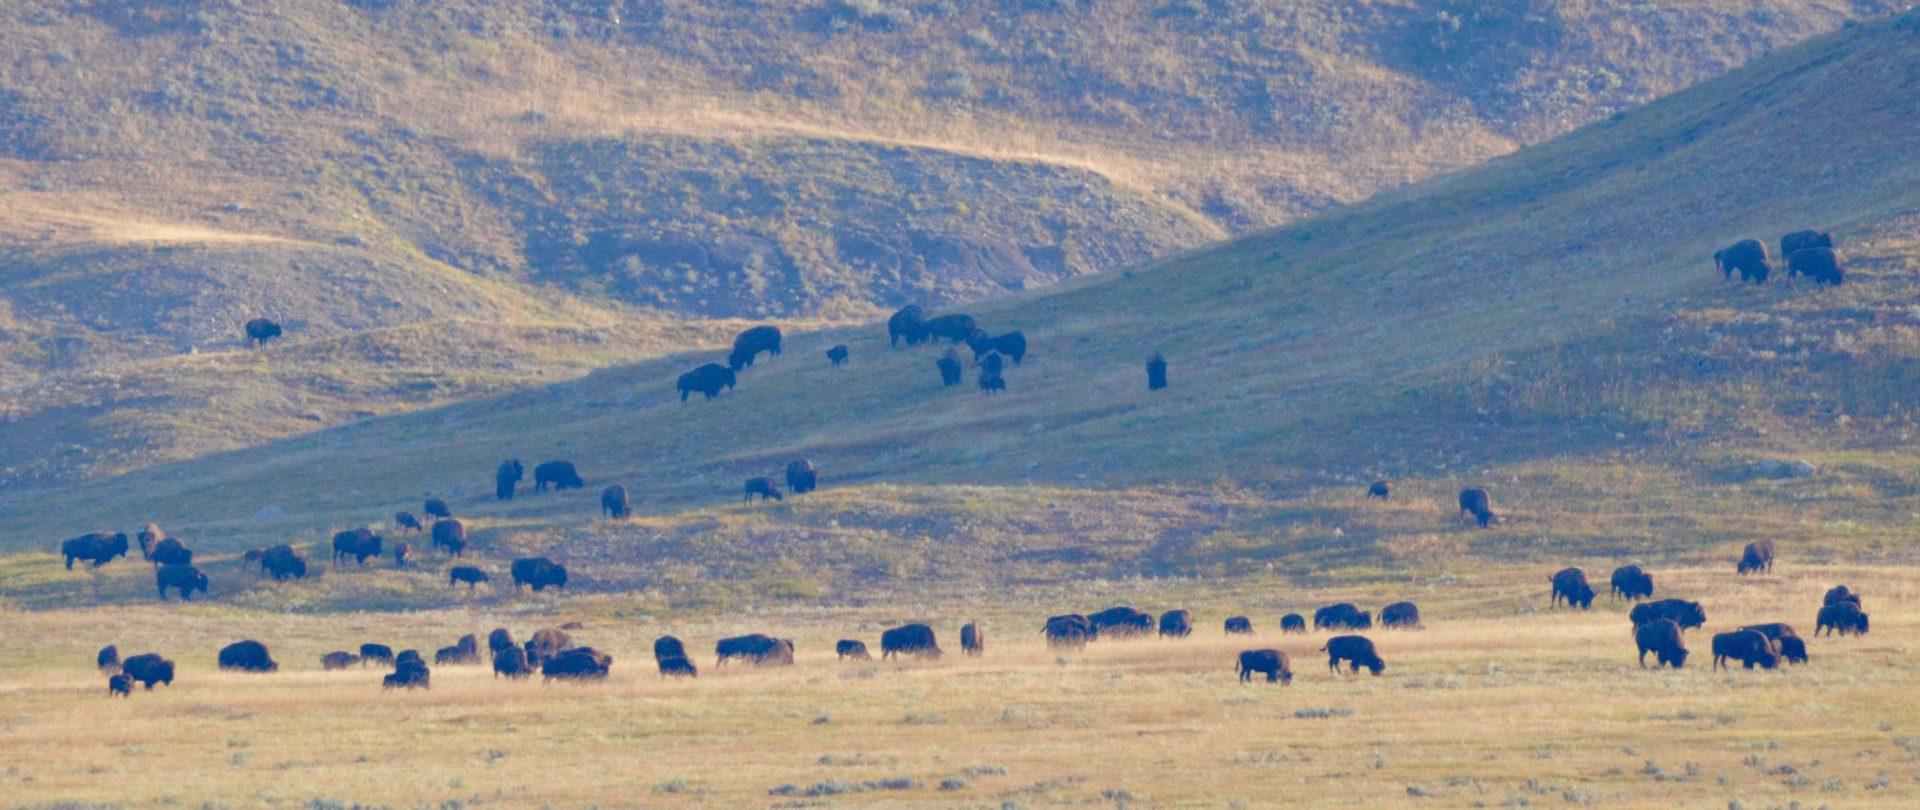 Grasslands National Park Bison Herd